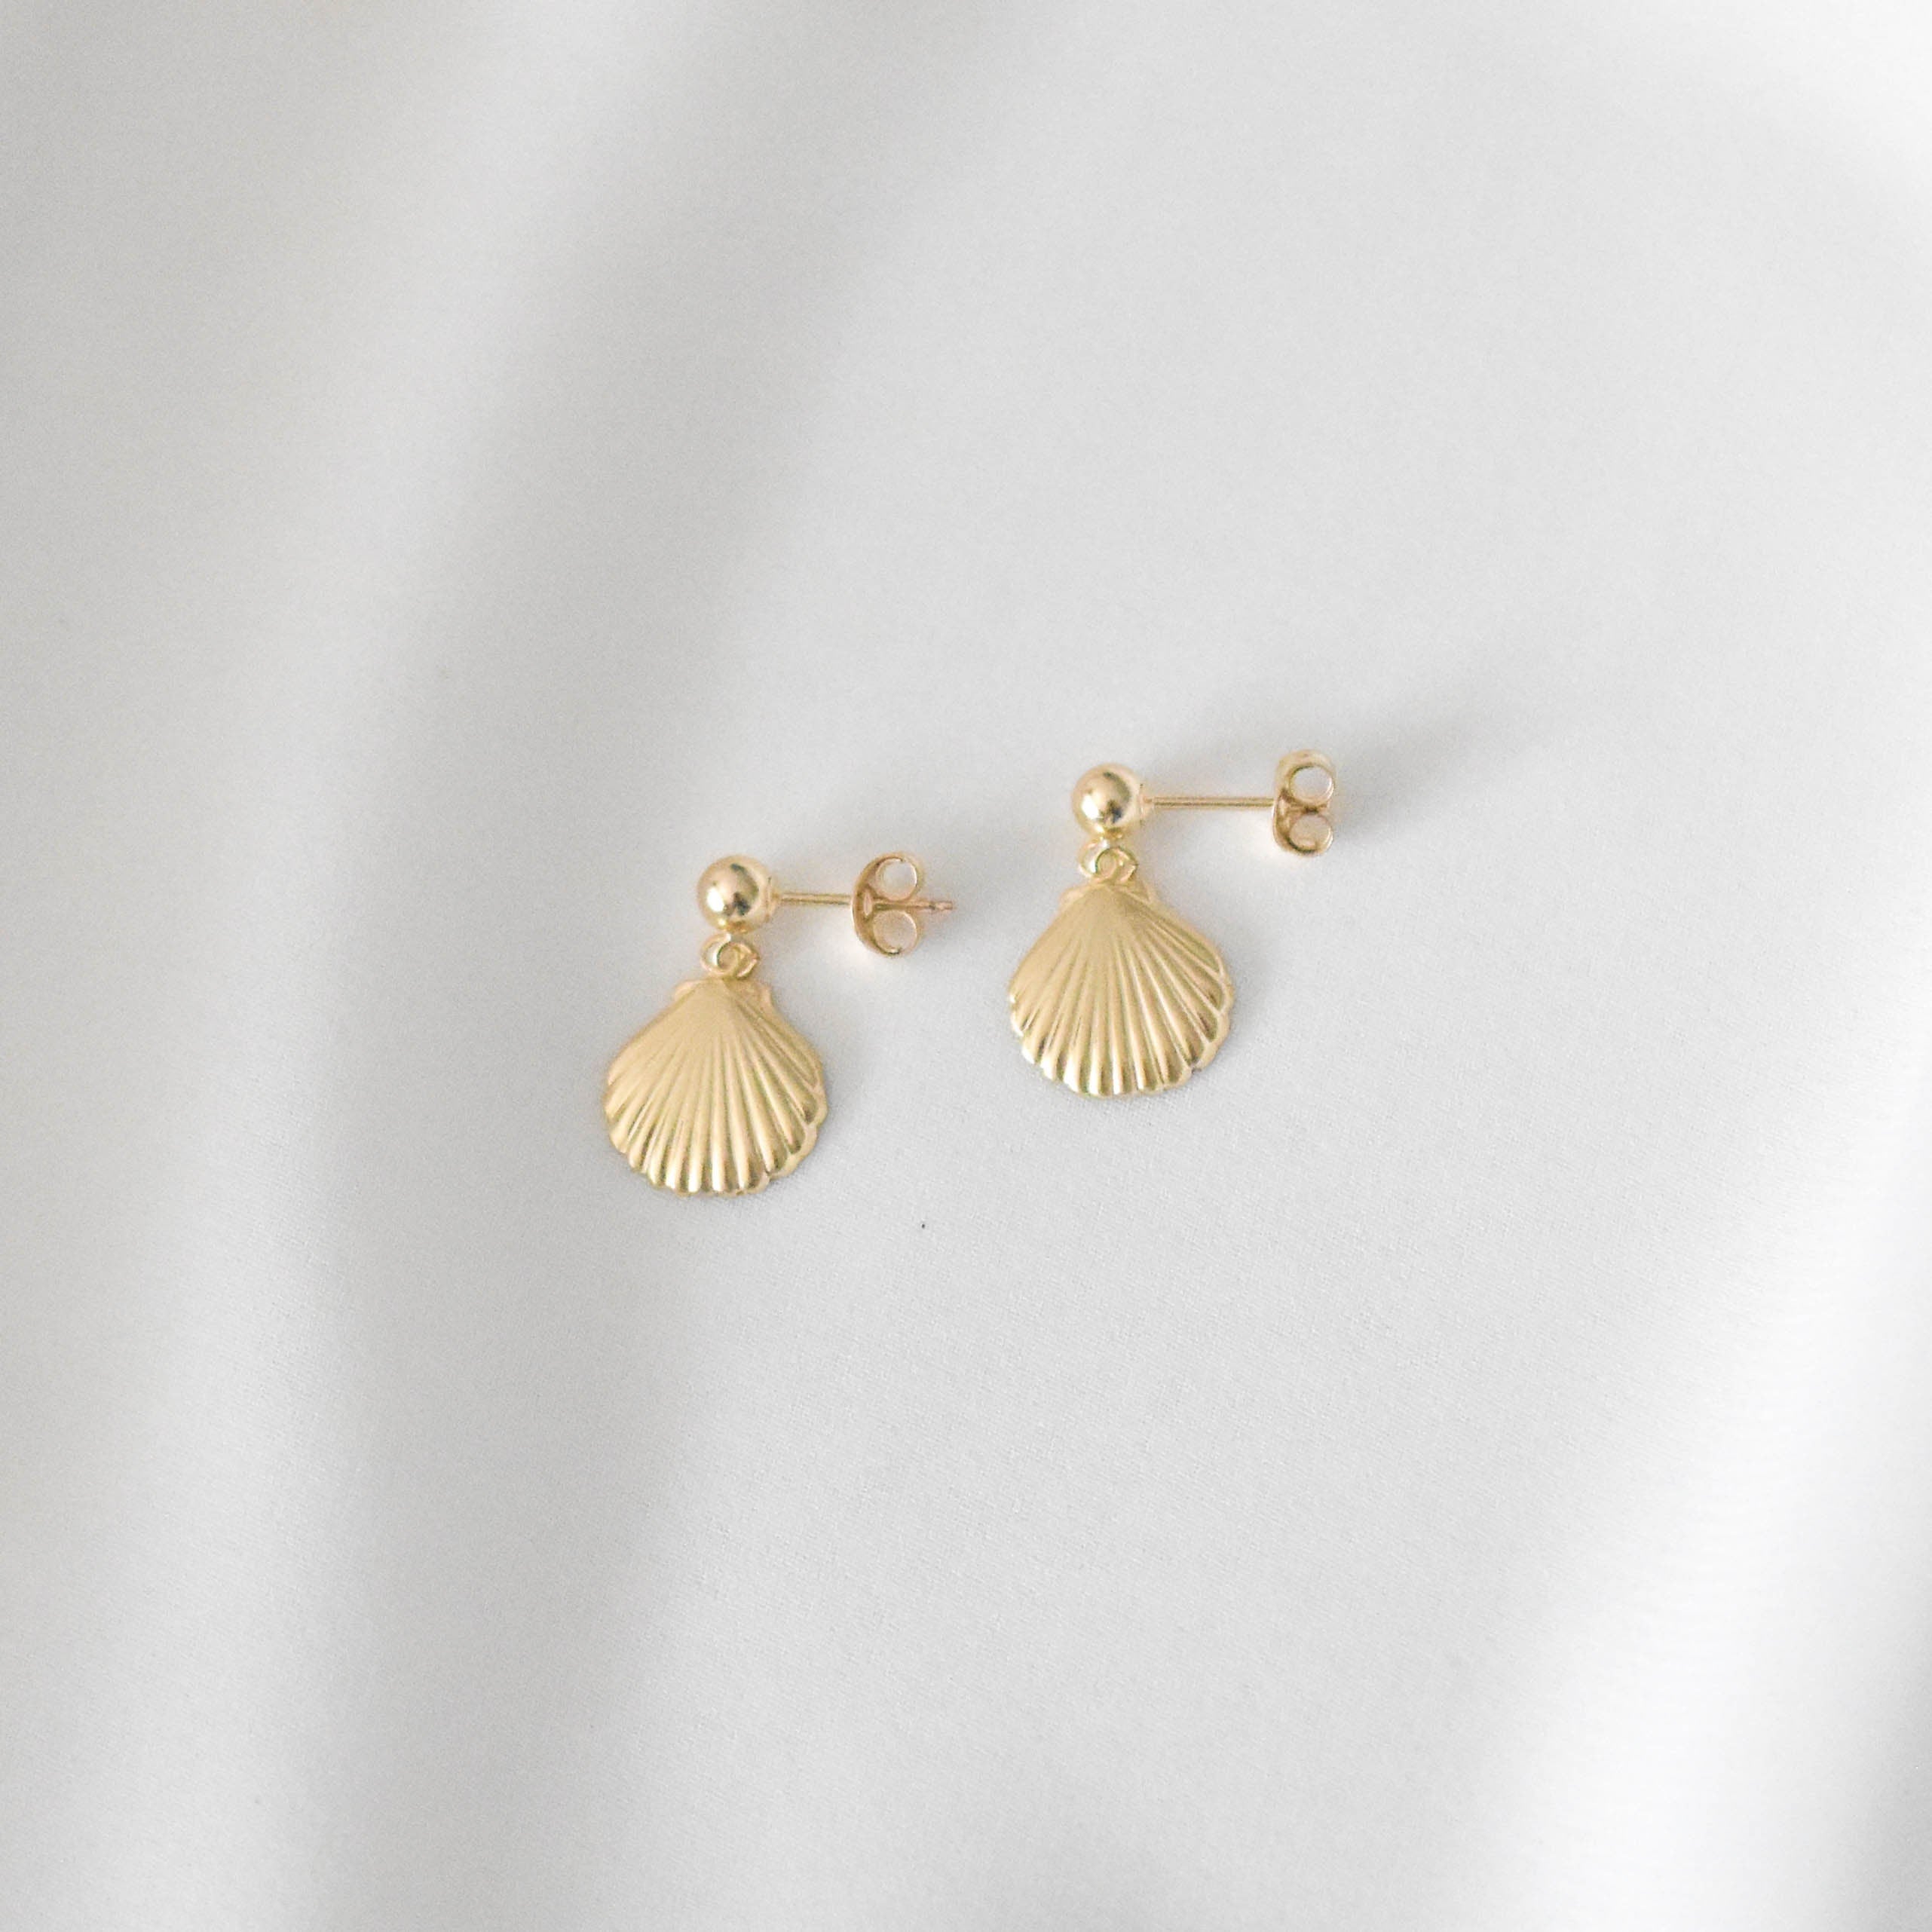 Large Seashell Earrings - shell earrings, seashell earrings, cute earrings, summer earrings, summery earrings, vacation earrings |GFE00049